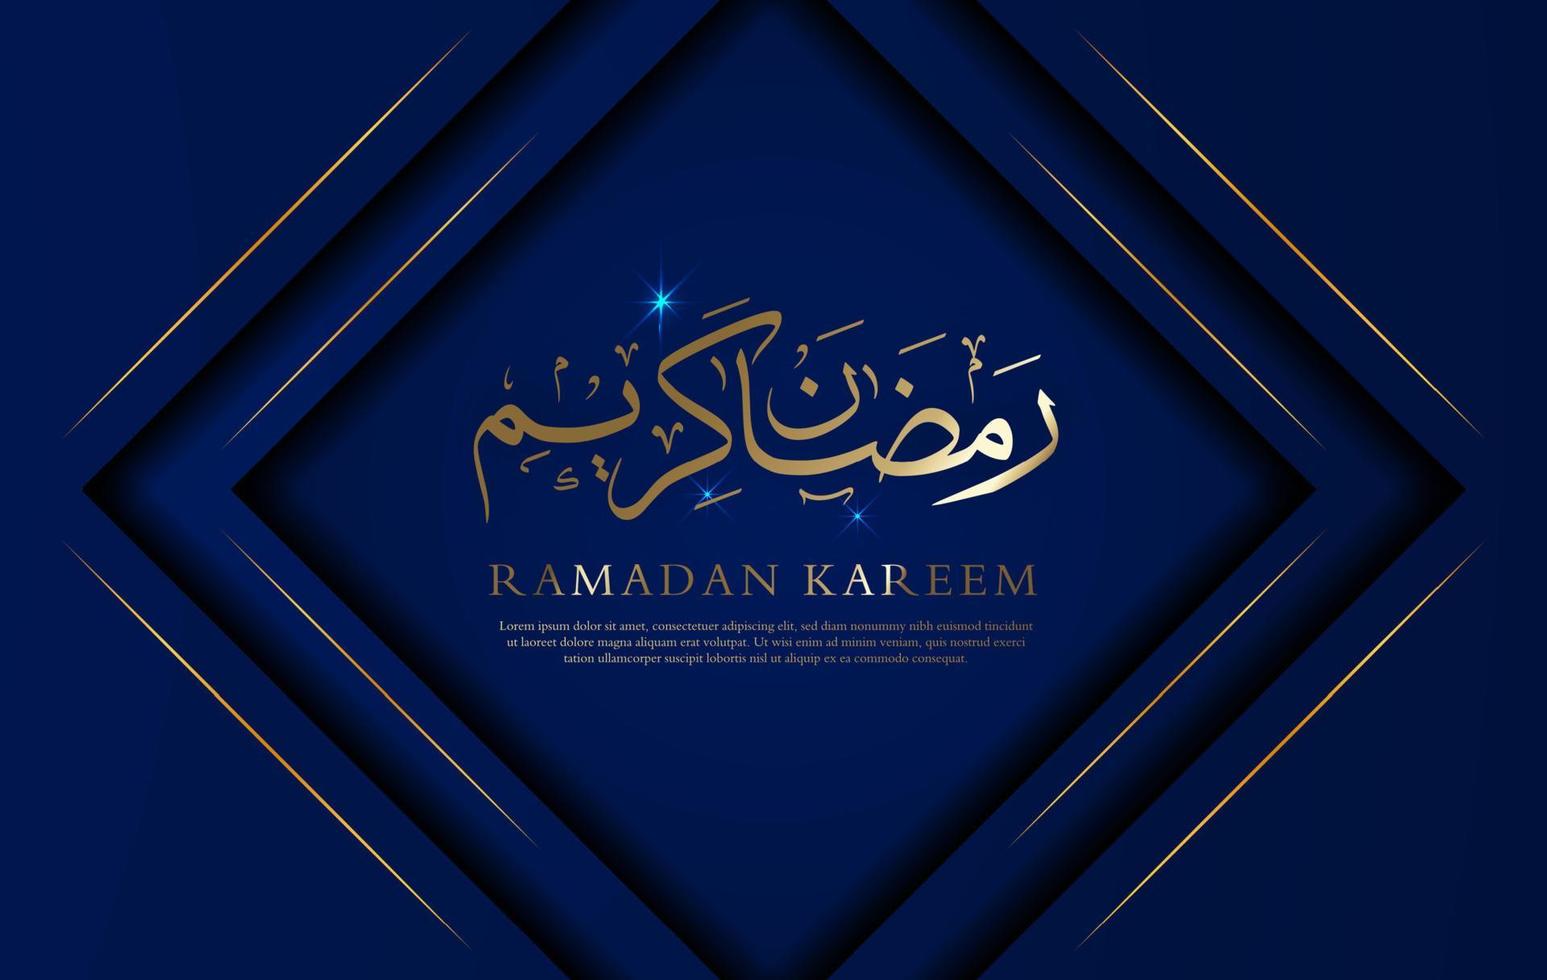 Ramadan Kareem in luxury style background vector